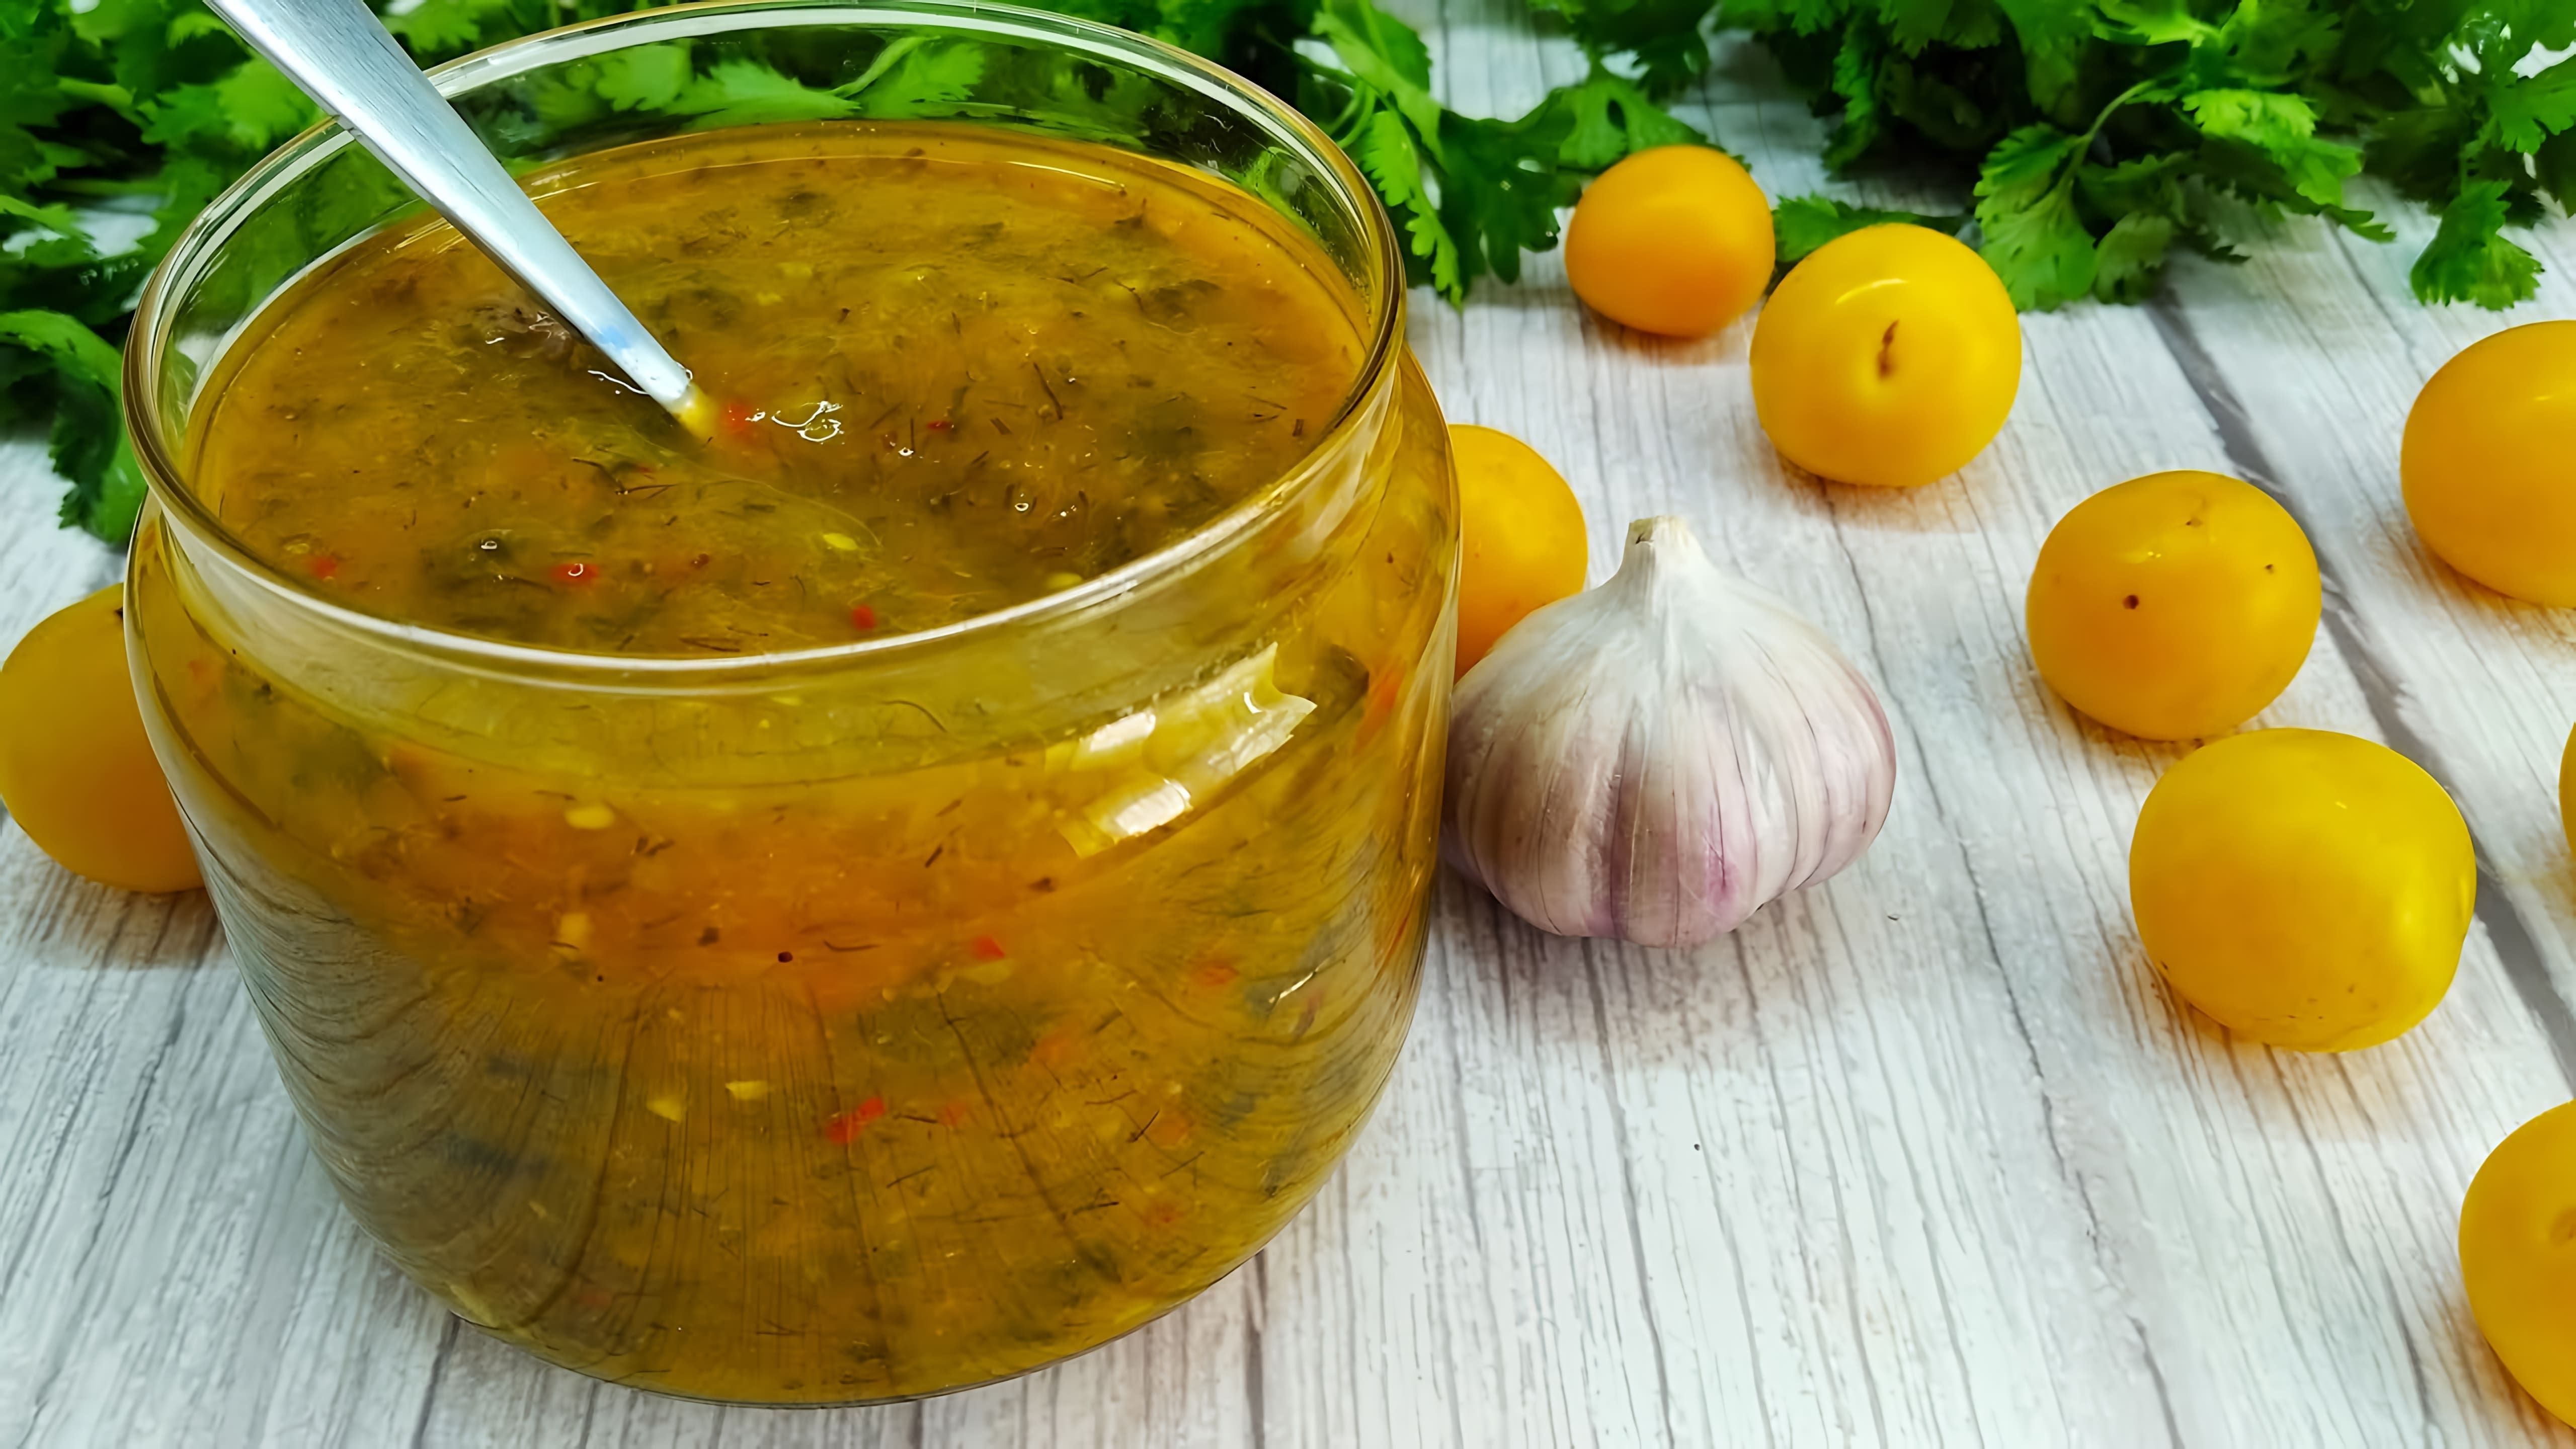 Видео посвящено приготовлению соуса из чернослива под названием Тхмали